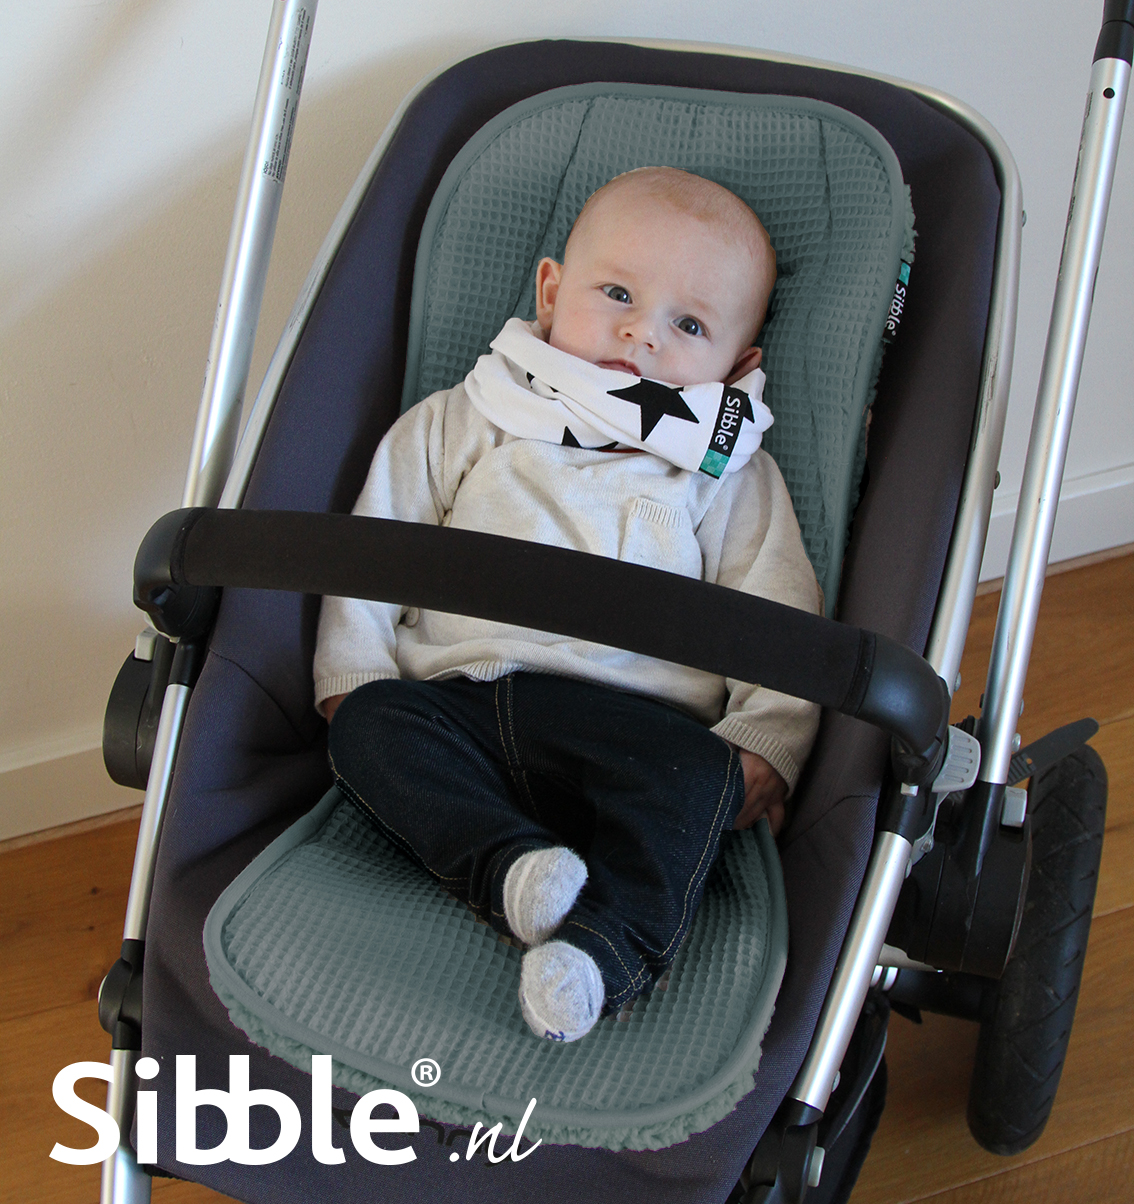 Sibble Buggy inlegger voor beter zitcomfort Sibble de leukste babyspullen - Maxi Cosi bekleding en nog veel meer!